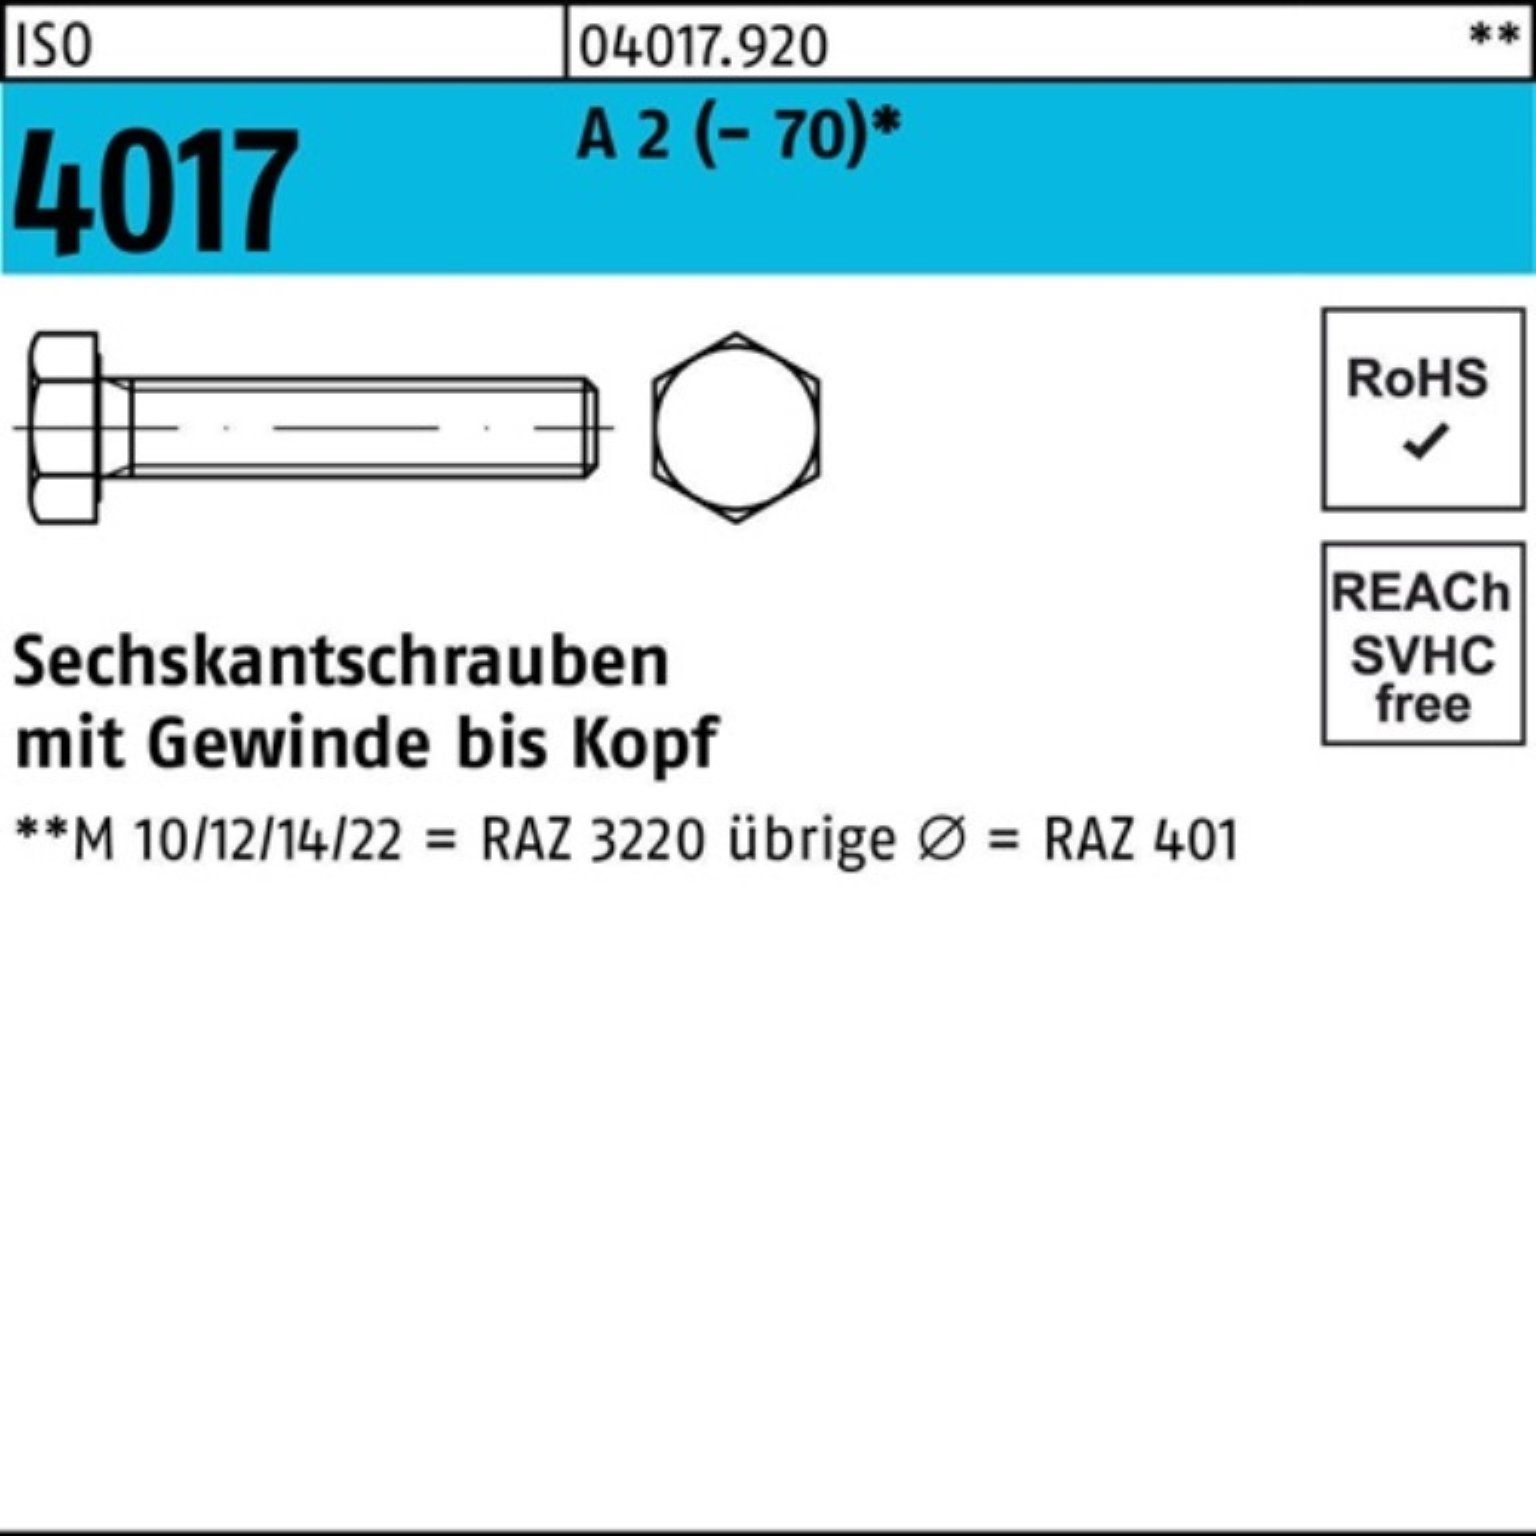 Bufab Sechskantschraube 100er Pack Sechskantschraube ISO 4017 VG M36x 120 A 2 (70) 1 Stück